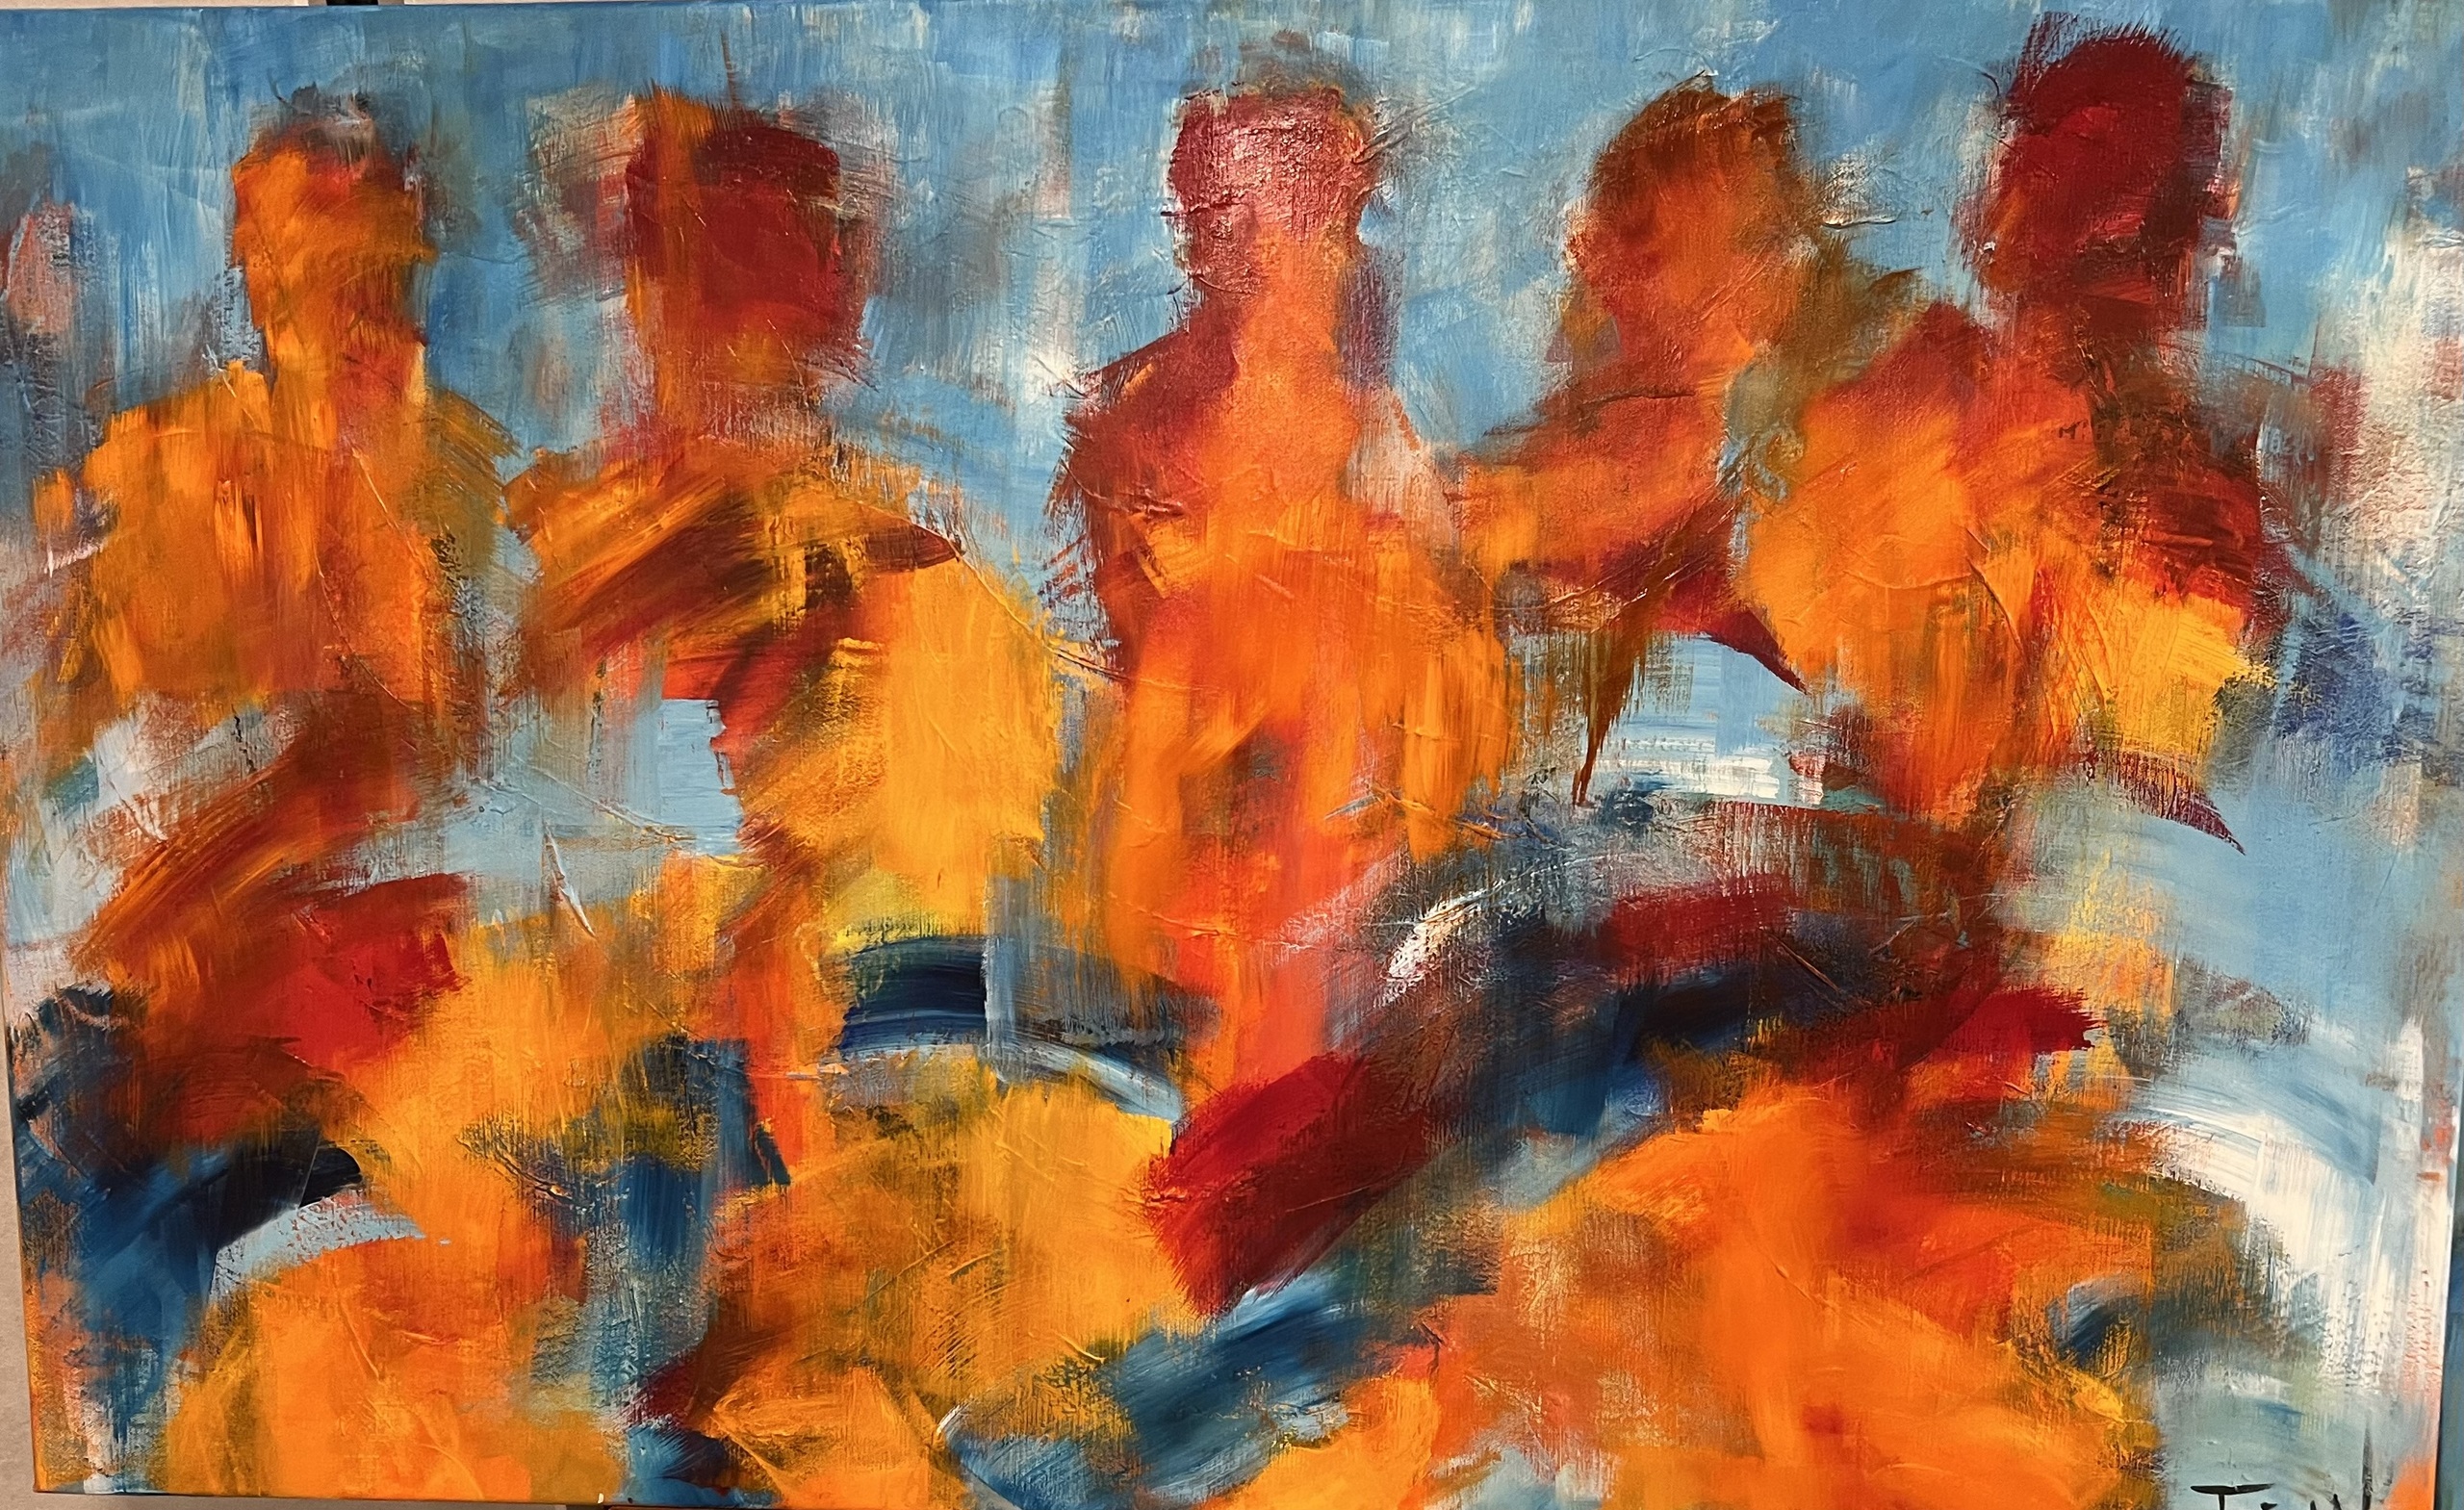 Stort abstrakt maleri i varme jordfarver og masser af energi. Jeg ser mennesker, der bevæger sig mellem hinanden og danner en vibrerende bevægelse.